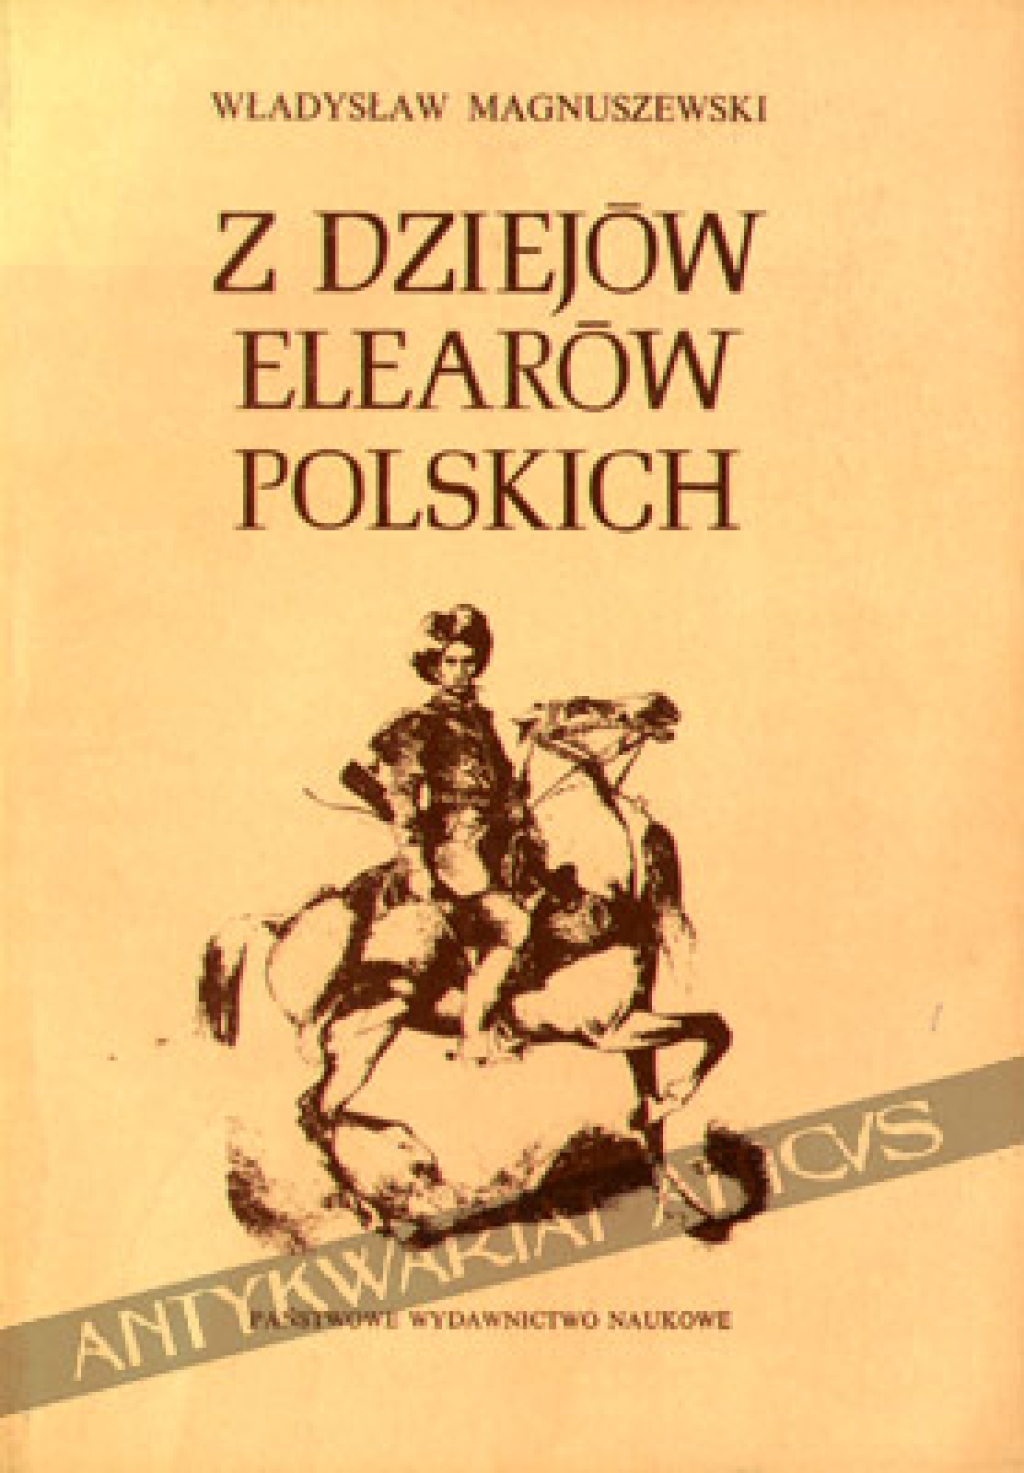 Z dziejów elearów polskich. Stanisław Stroynowski - lisowski zagończyk, przywódca i legislator